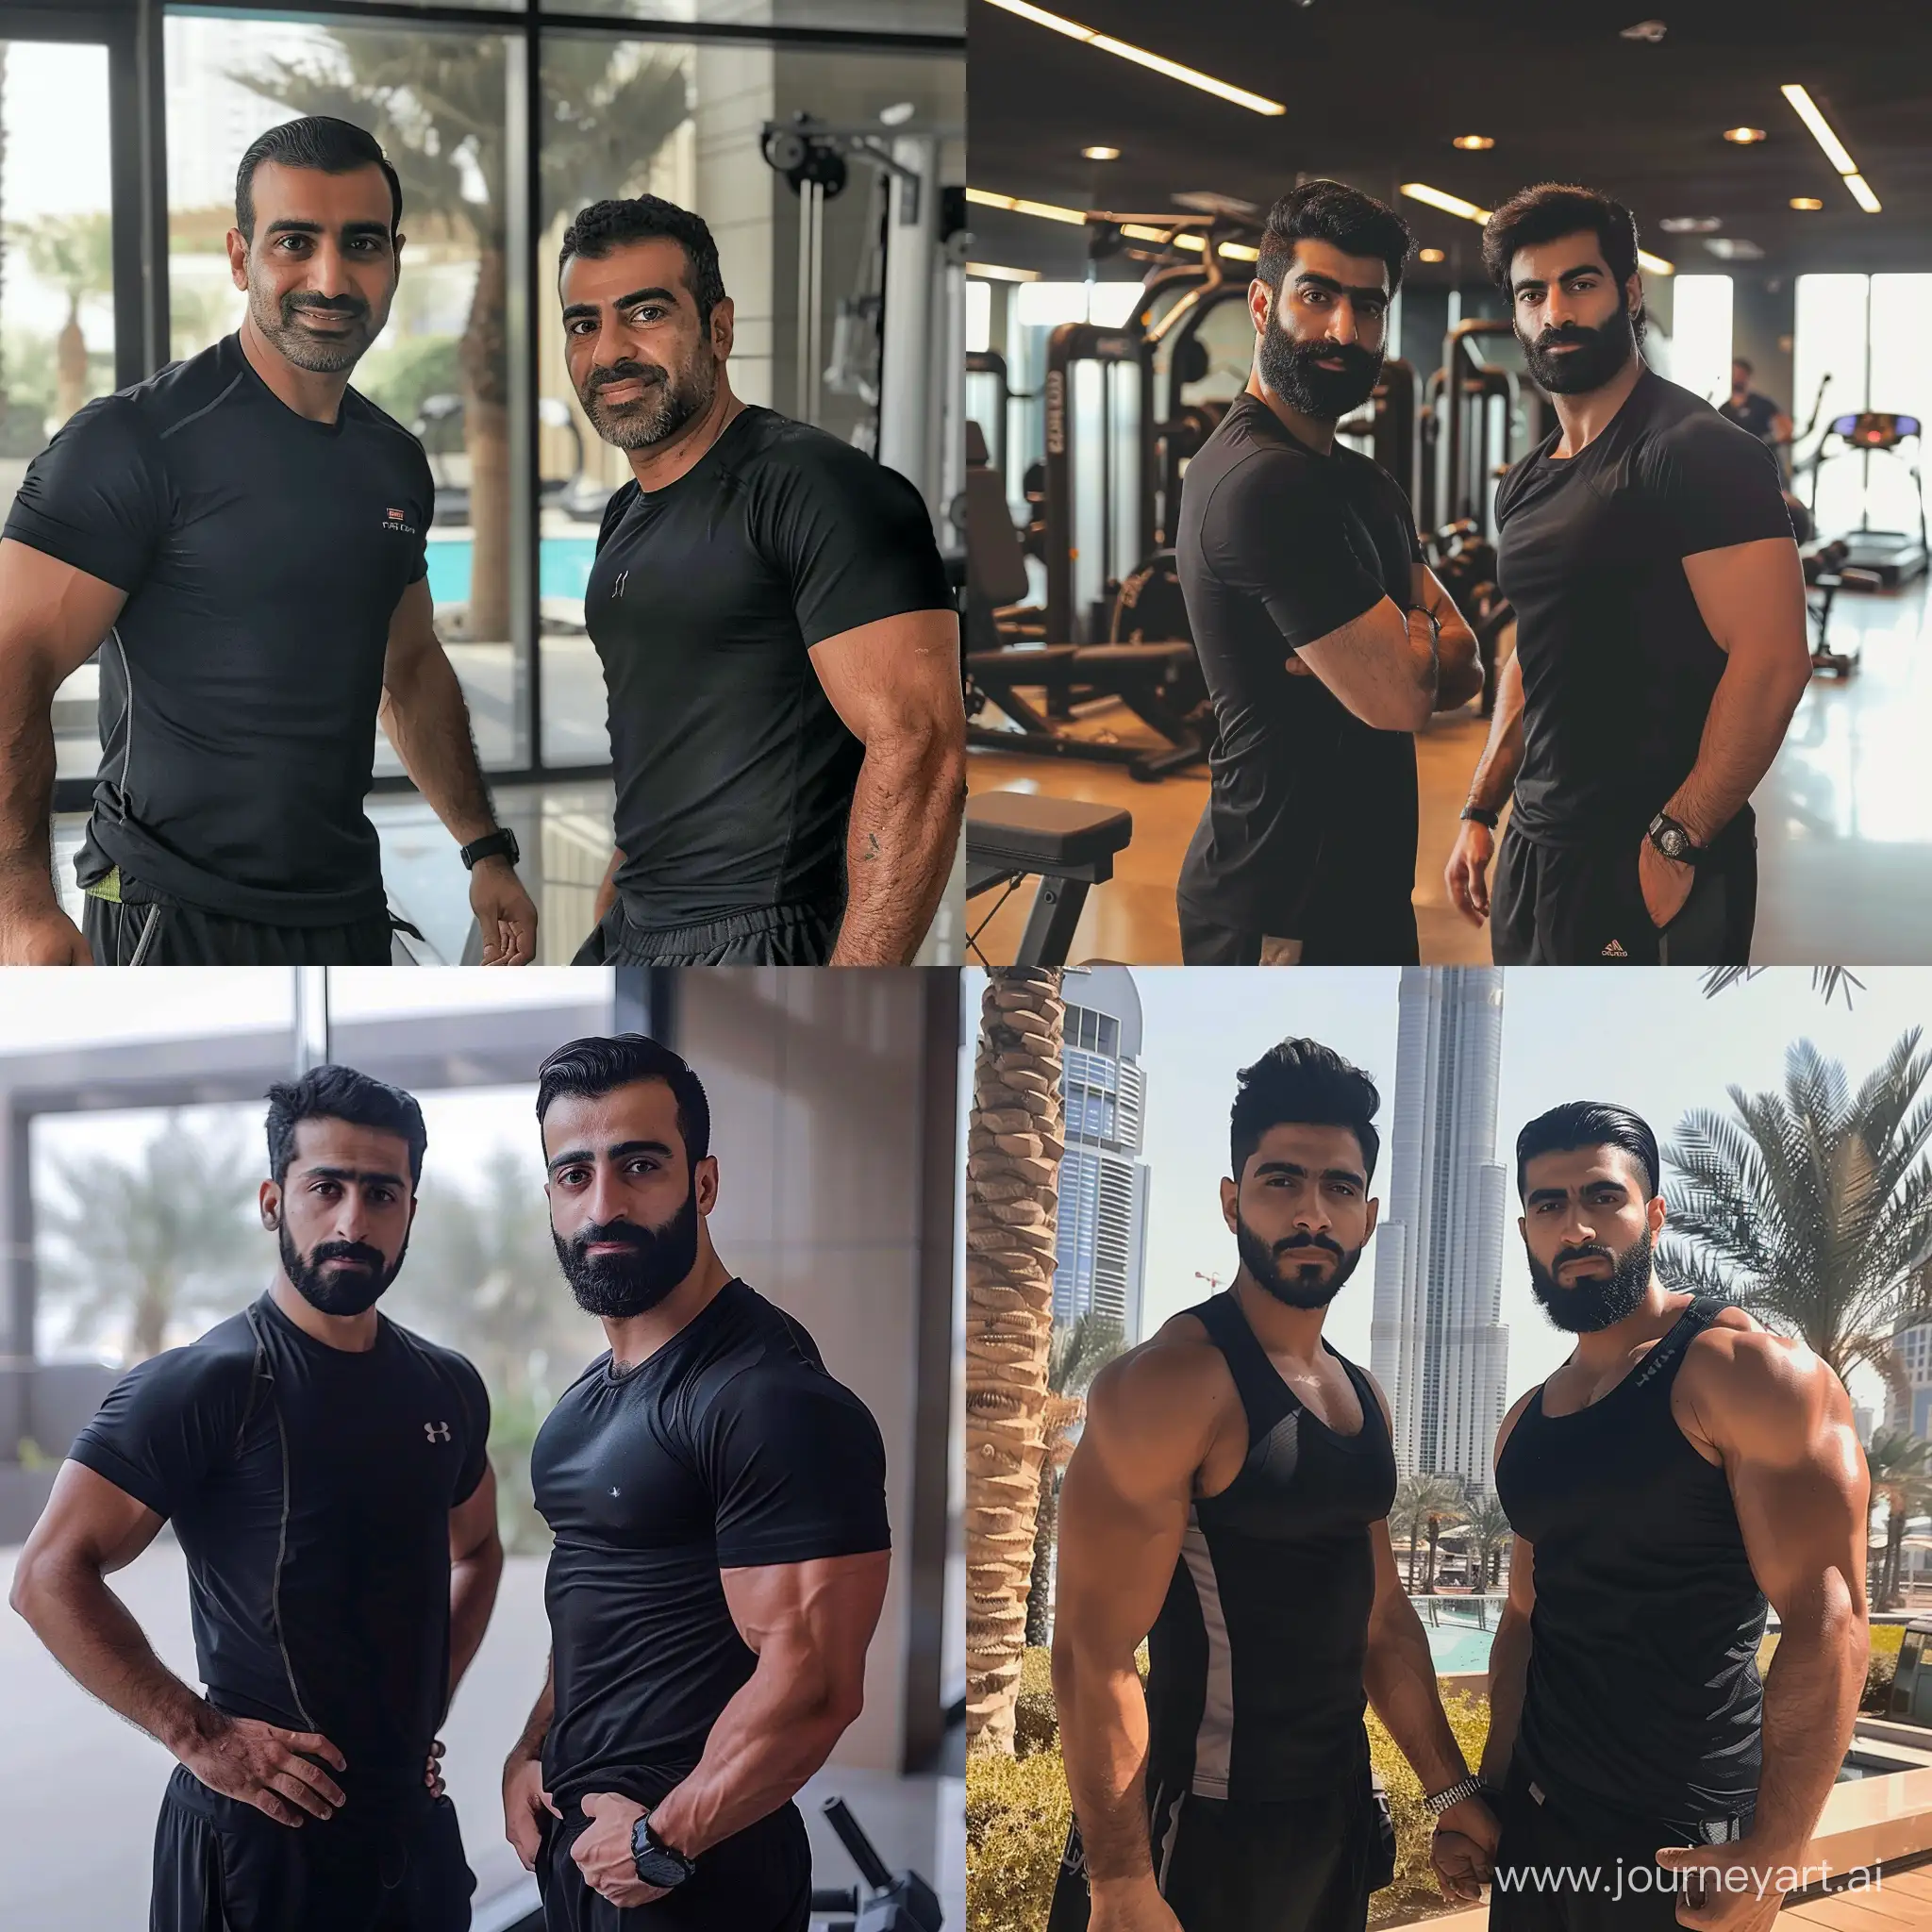 Иранские парни работают фитнес-тренерами в Дубае